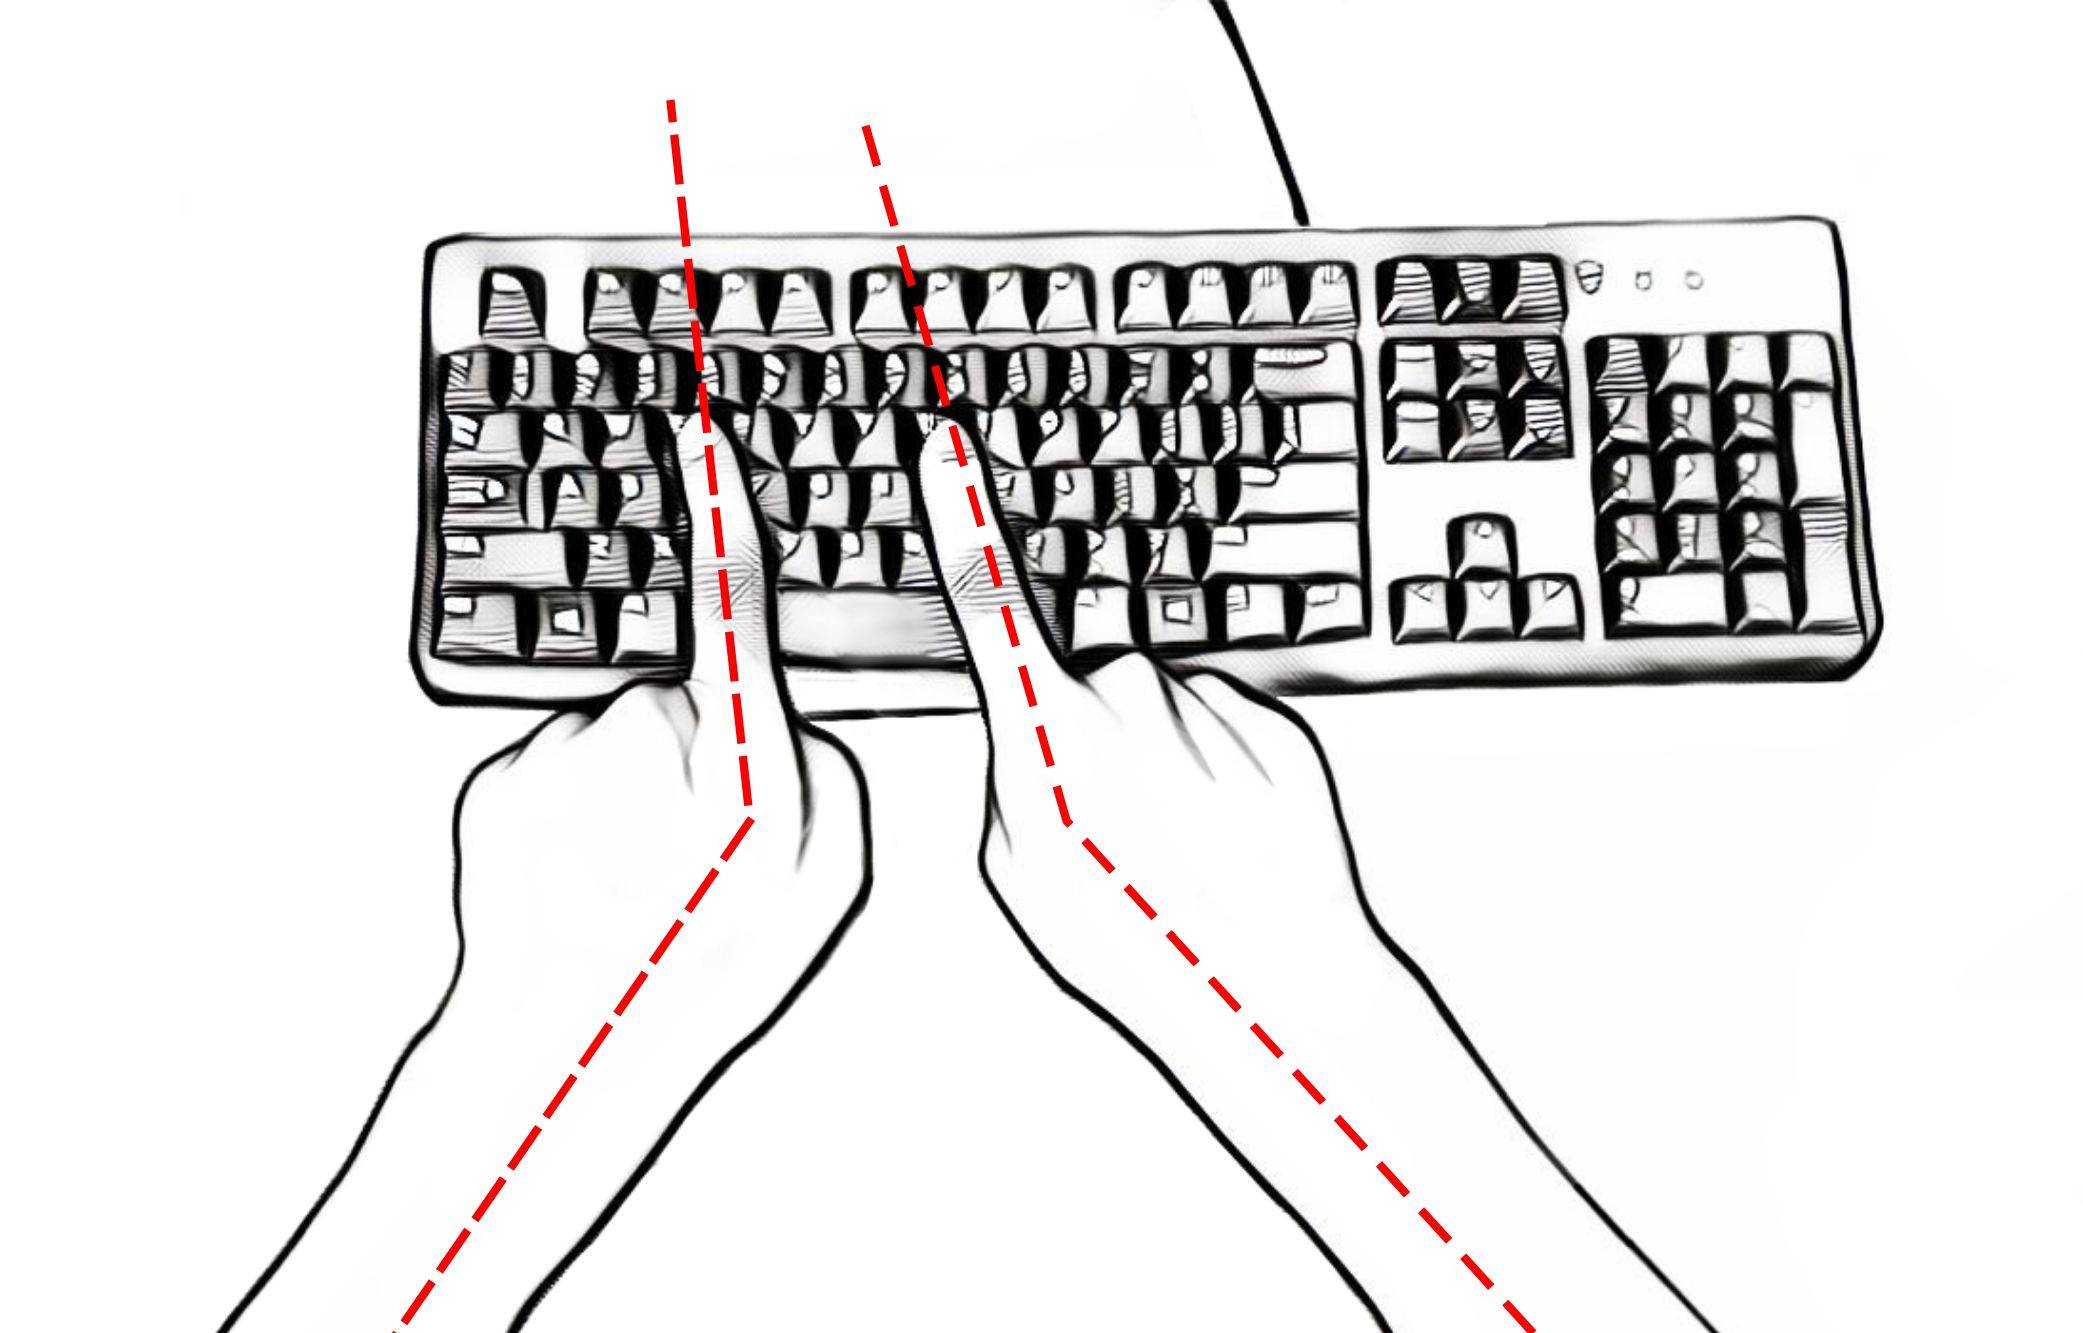 standard keyboard asymmetry